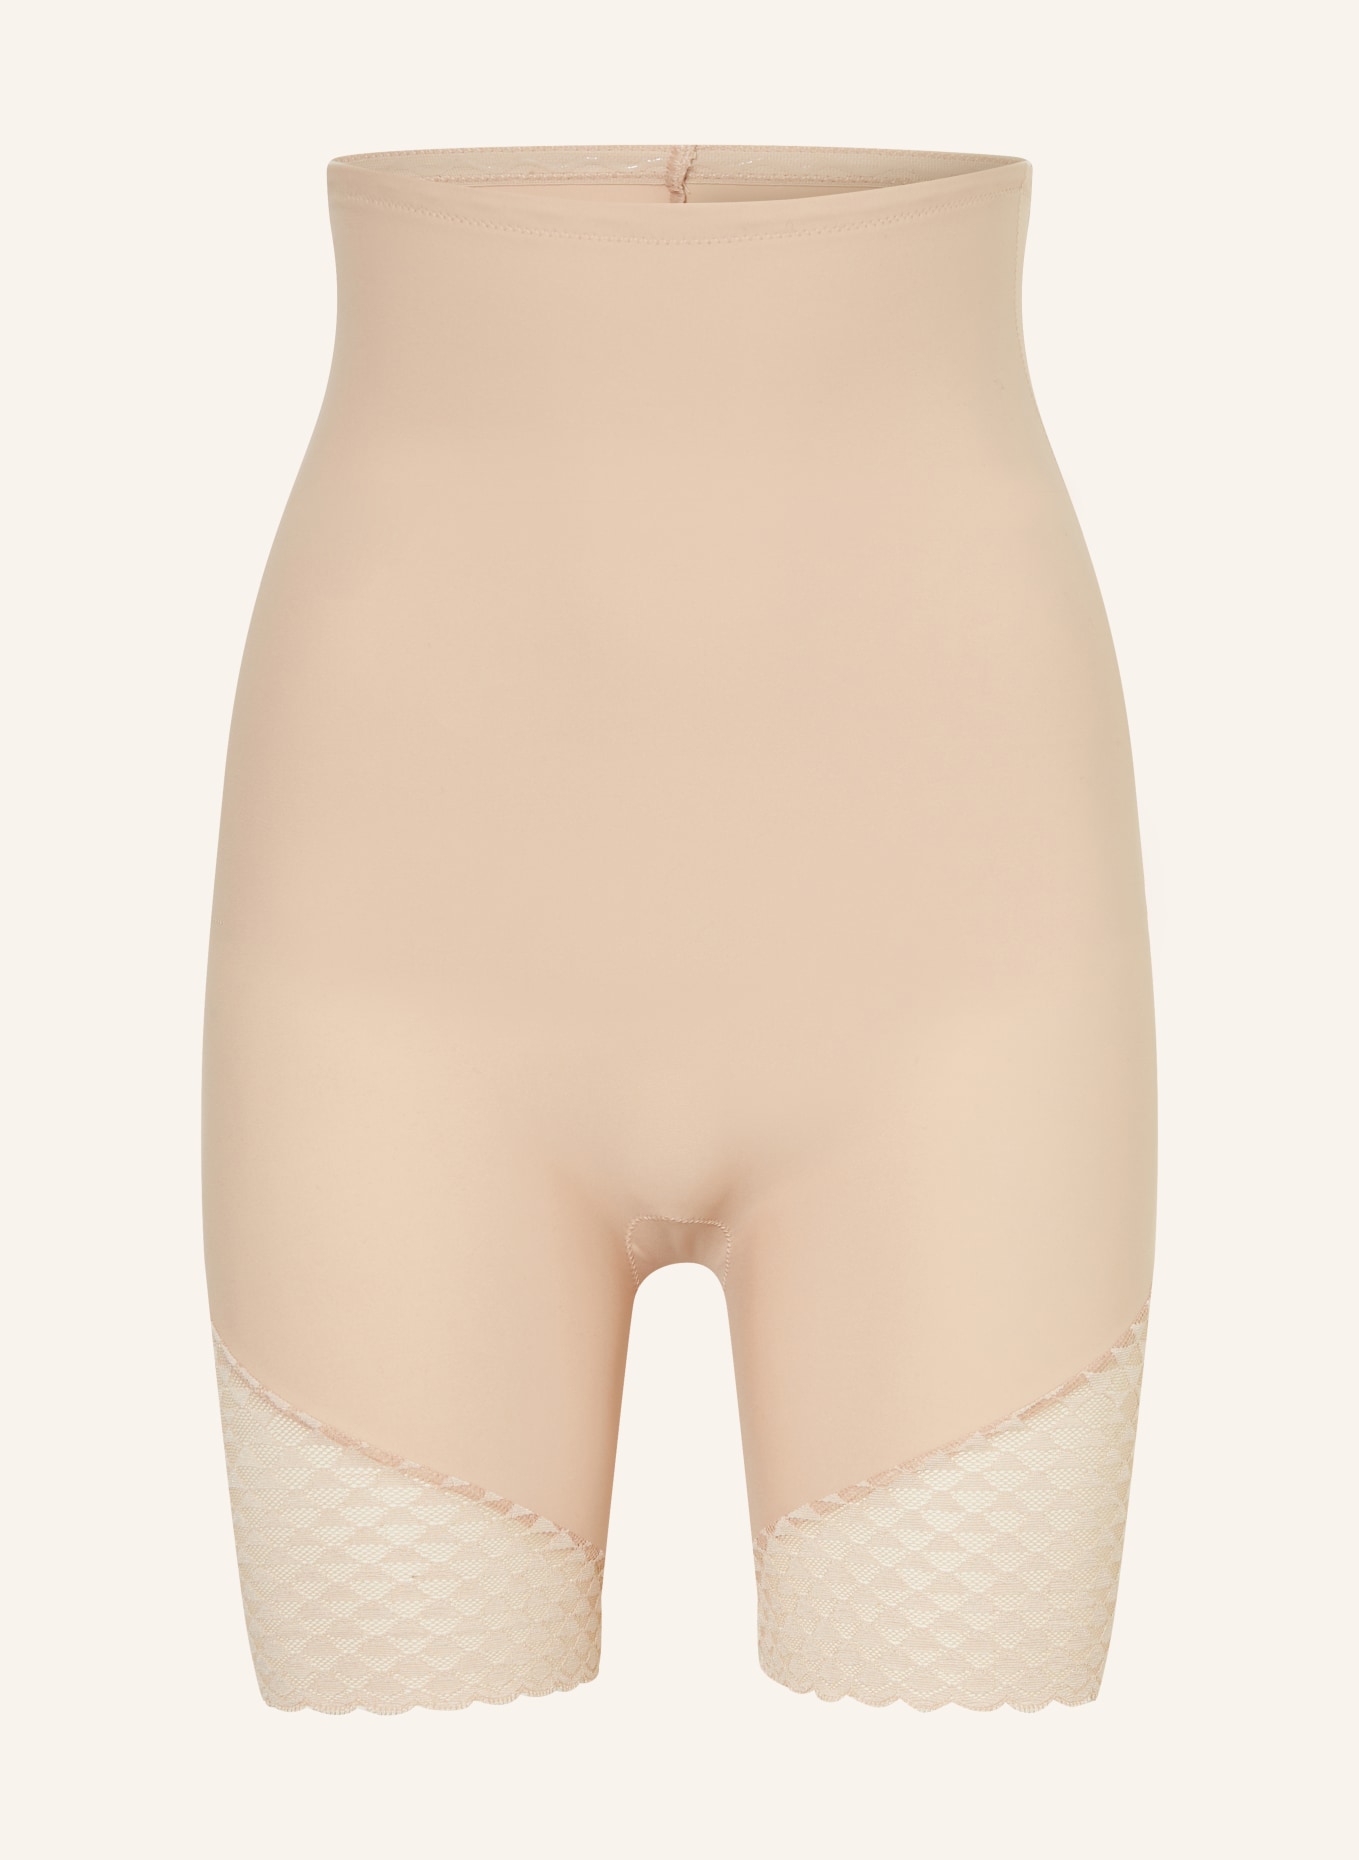 SIMONE PÉRÈLE Shape-Shorts SUBTILE, Farbe: NUDE (Bild 1)